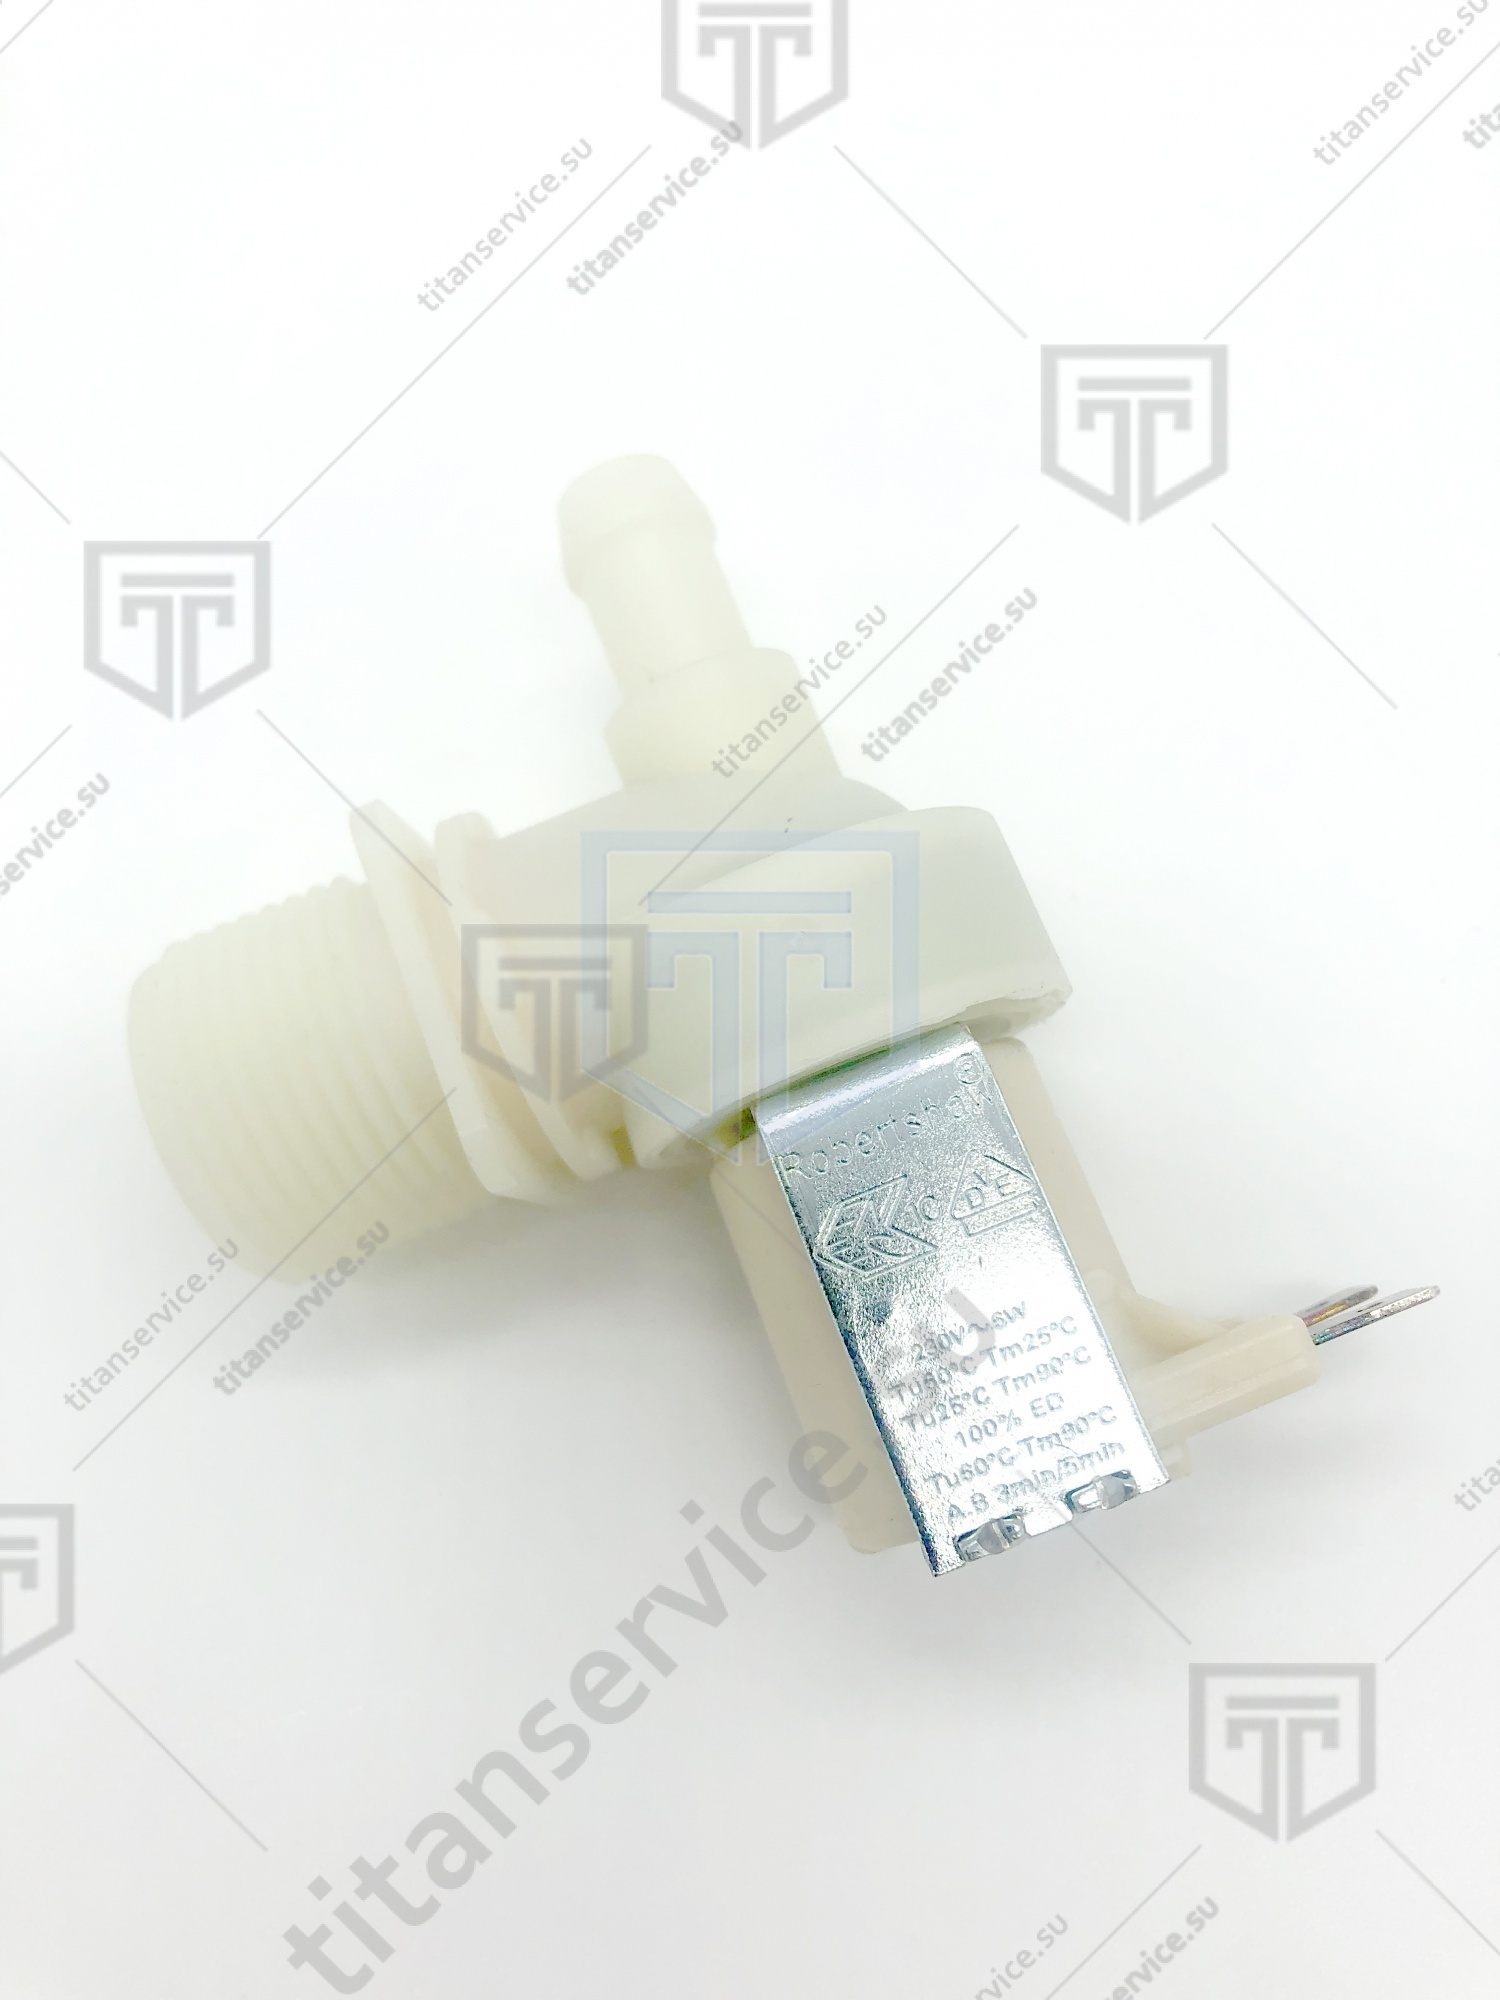 Клапан V19 Invensys valves 230 В (10408120/290114/0000259/2, МОНАКО) - фото №2